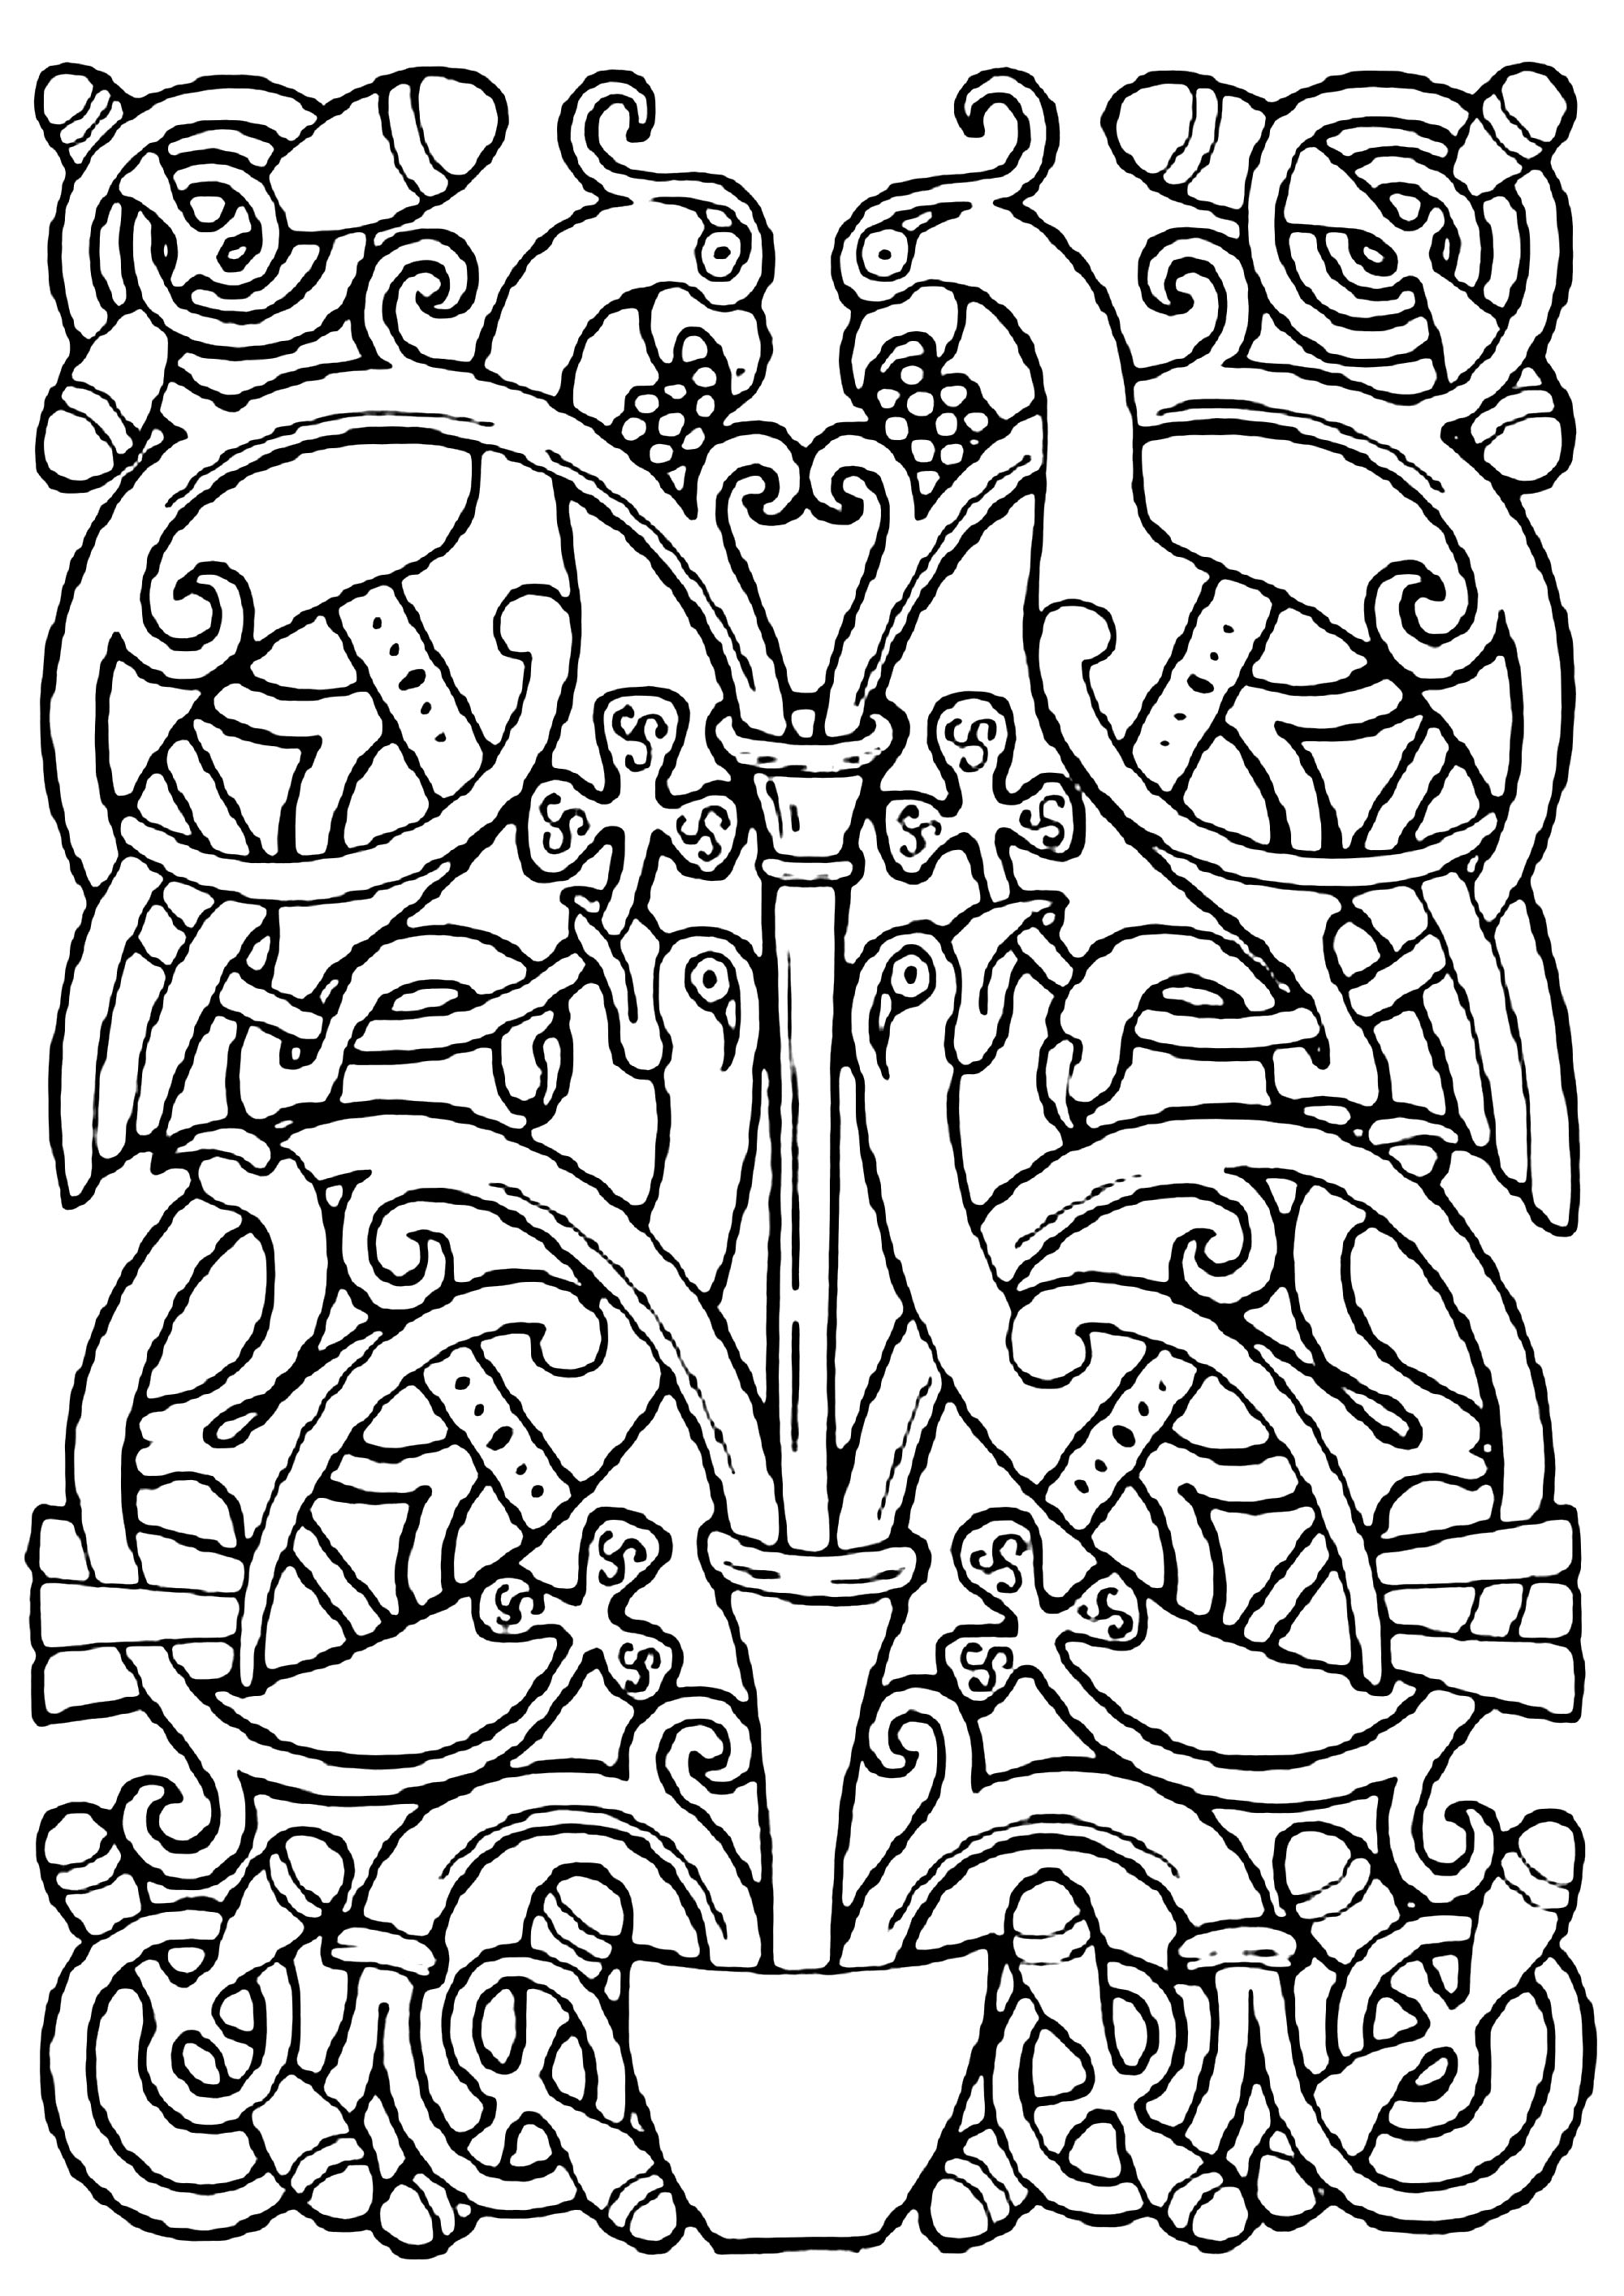 Desenho celta de aves, com motivos celtas entrelaçados. Esta ilustração assemelha-se às encontradas em manuscritos medievais, como o Livro de Kells.